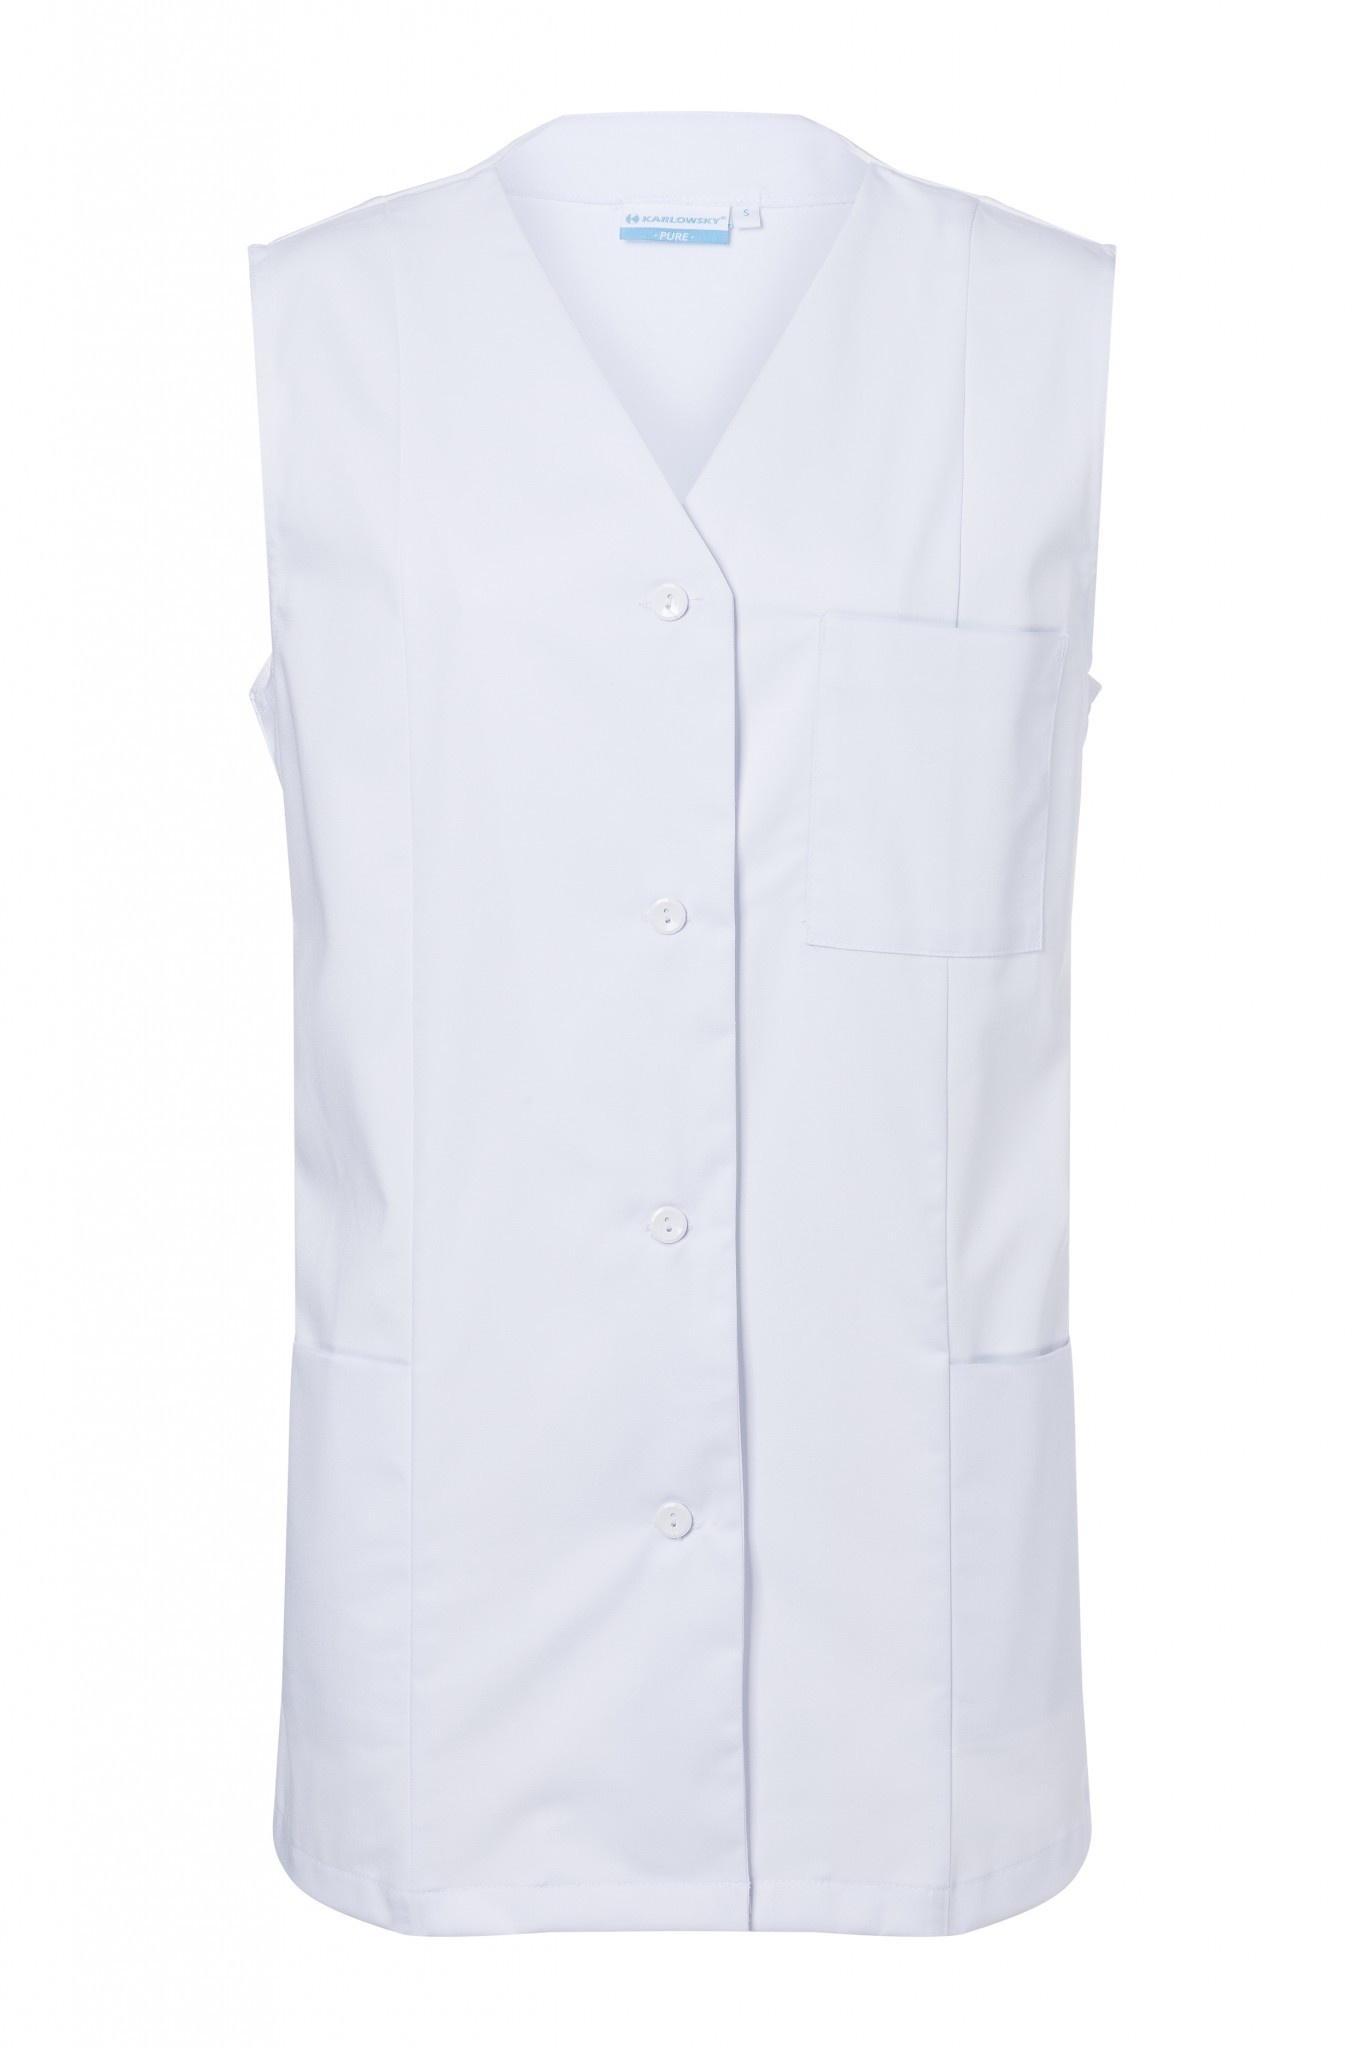 Damenkasack Basic | Weiß | 65% Polyester / 35% Baumwolle | Erhältlich in 6 Größen